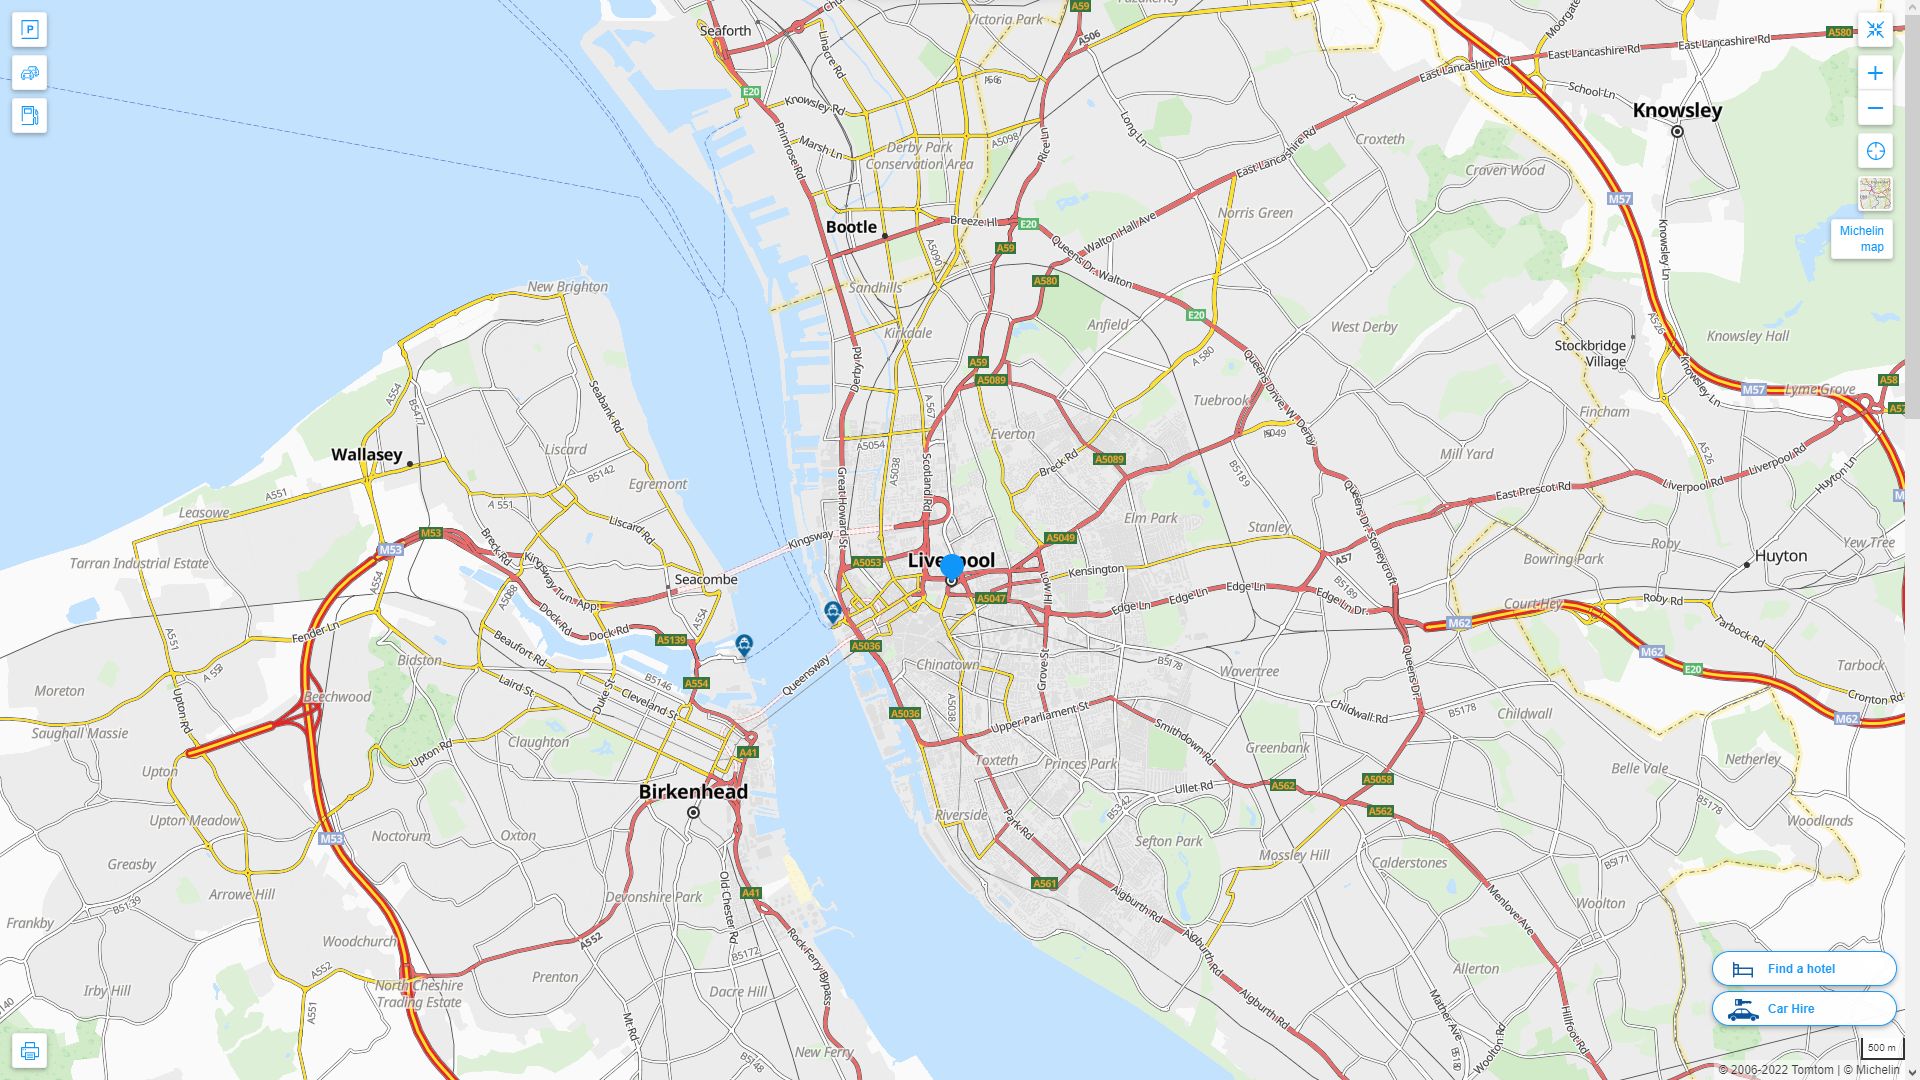 Liverpool Royaume Uni Autoroute et carte routiere